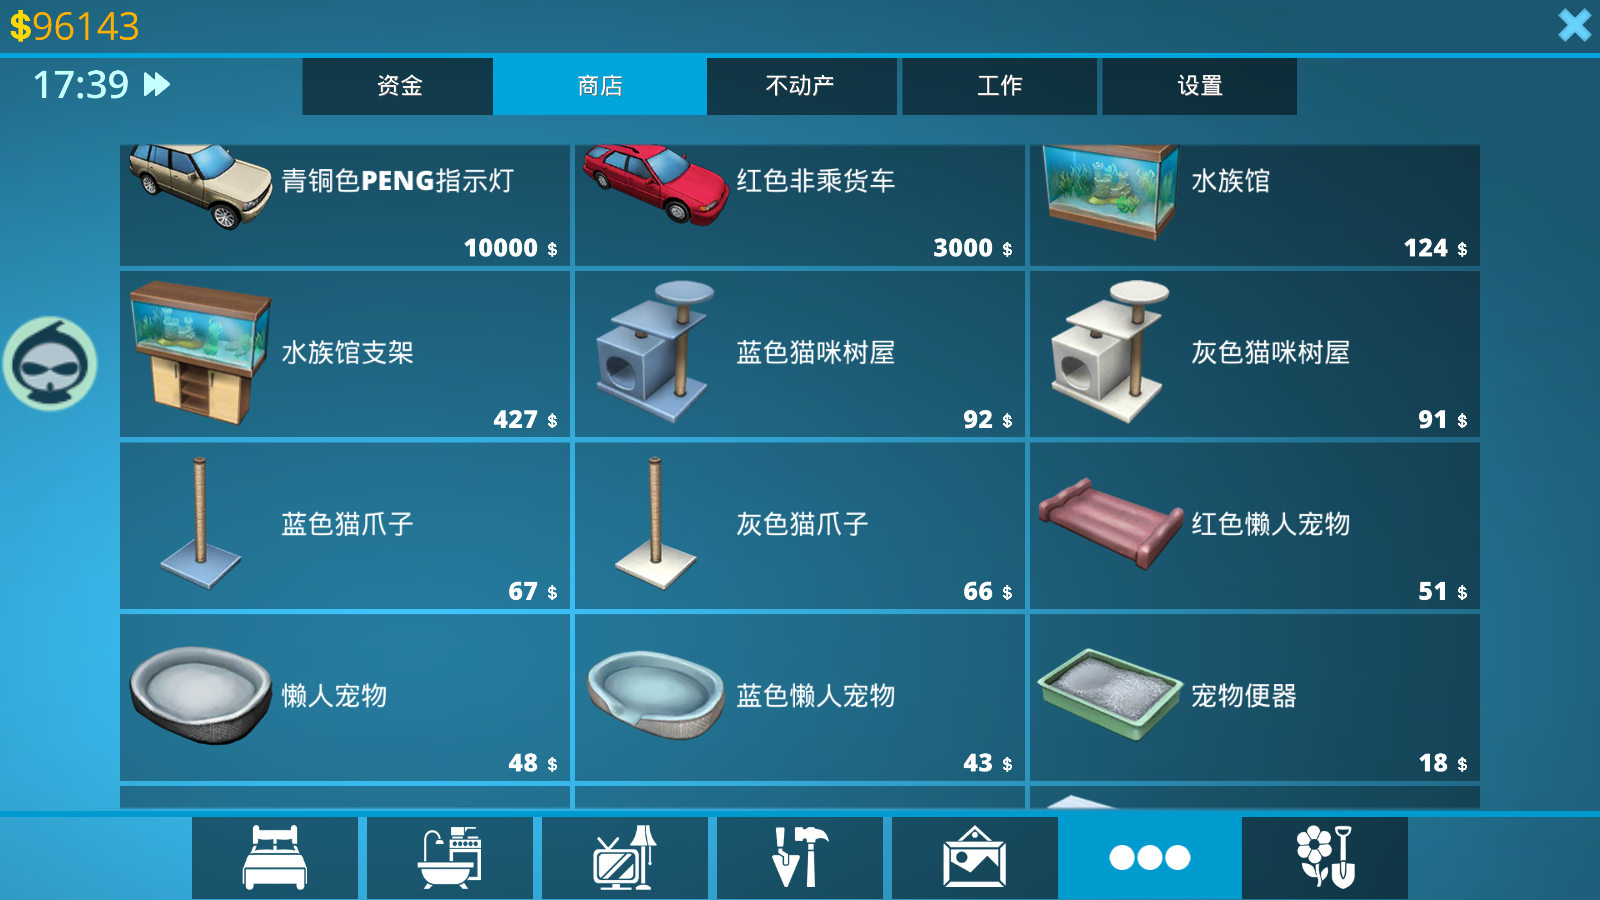 房产达人 中文版 PC电脑单机游戏 免steam 全dlc 送修改器插图